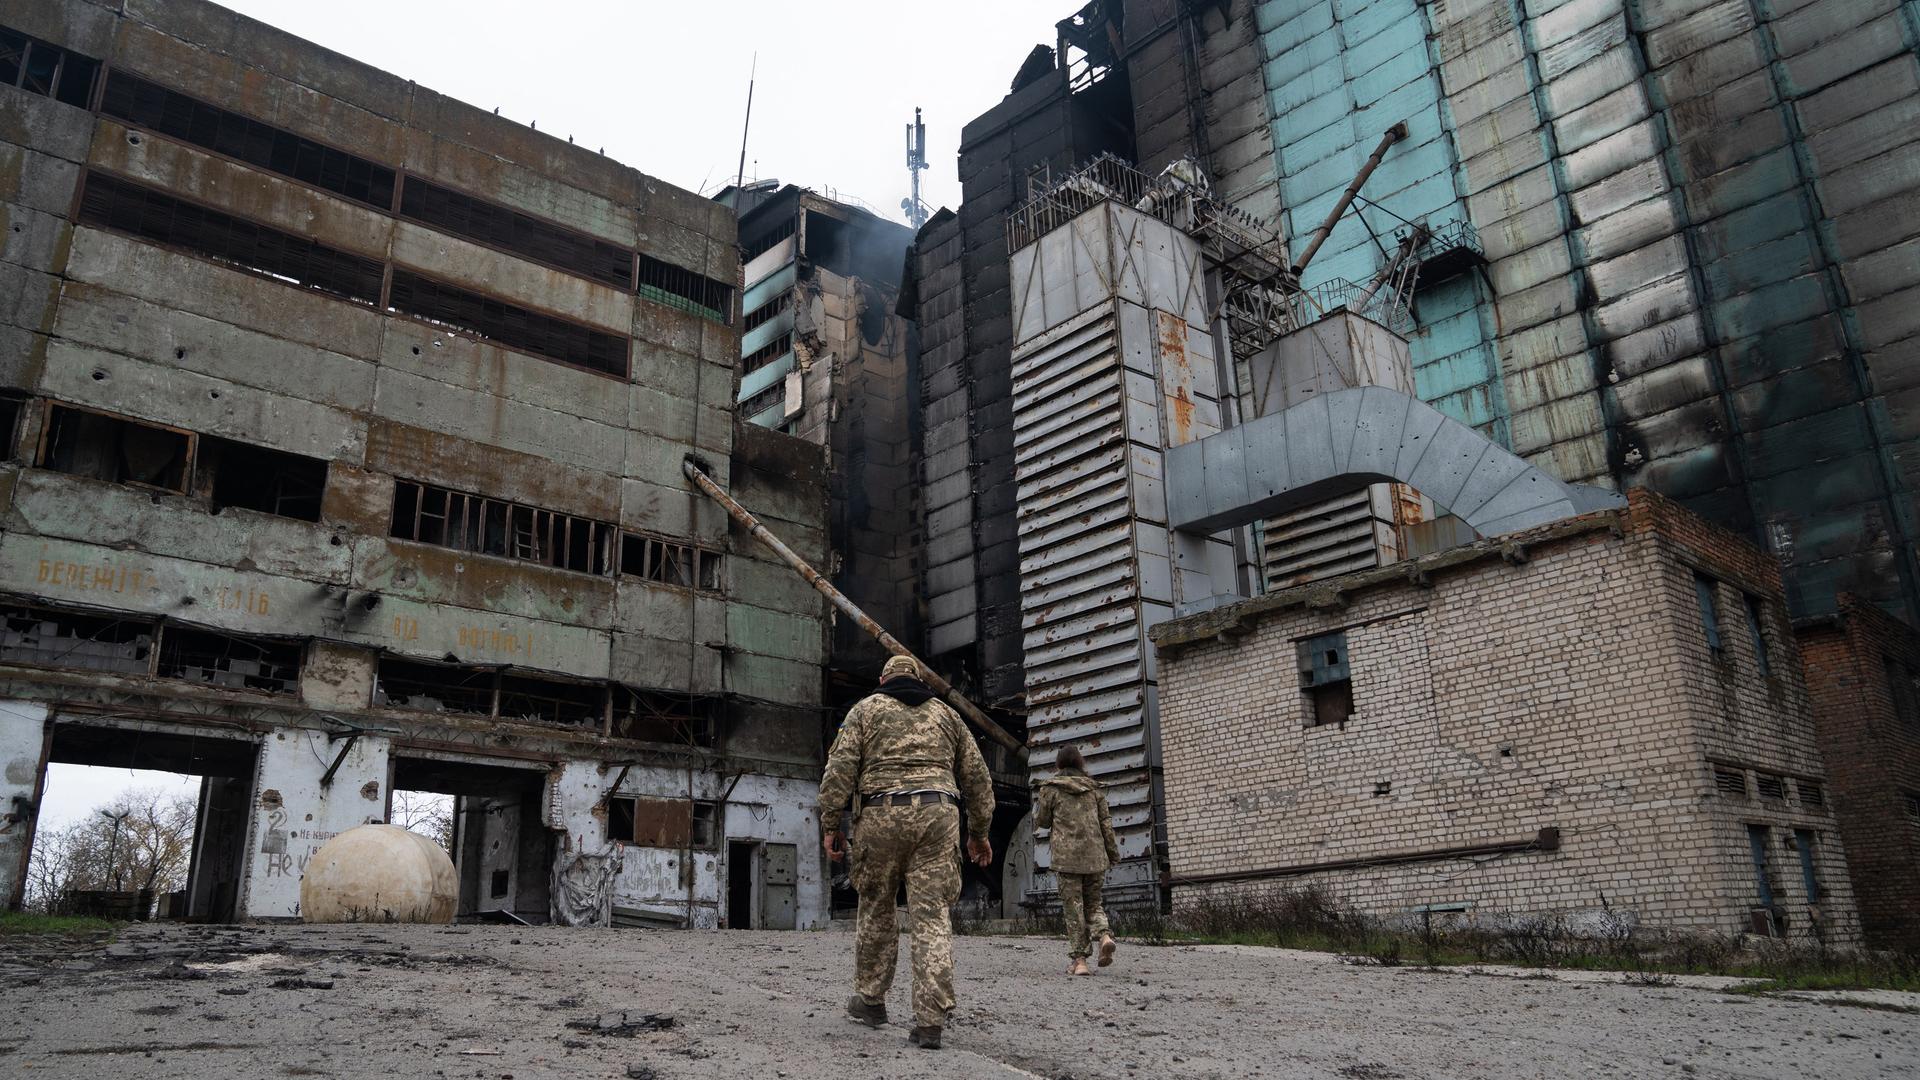 Ukrainische Soldaten laufen auf ein ausgebranntes Industriegebäude im Gebiet Cherson zu. In der Mitte raucht es noch.